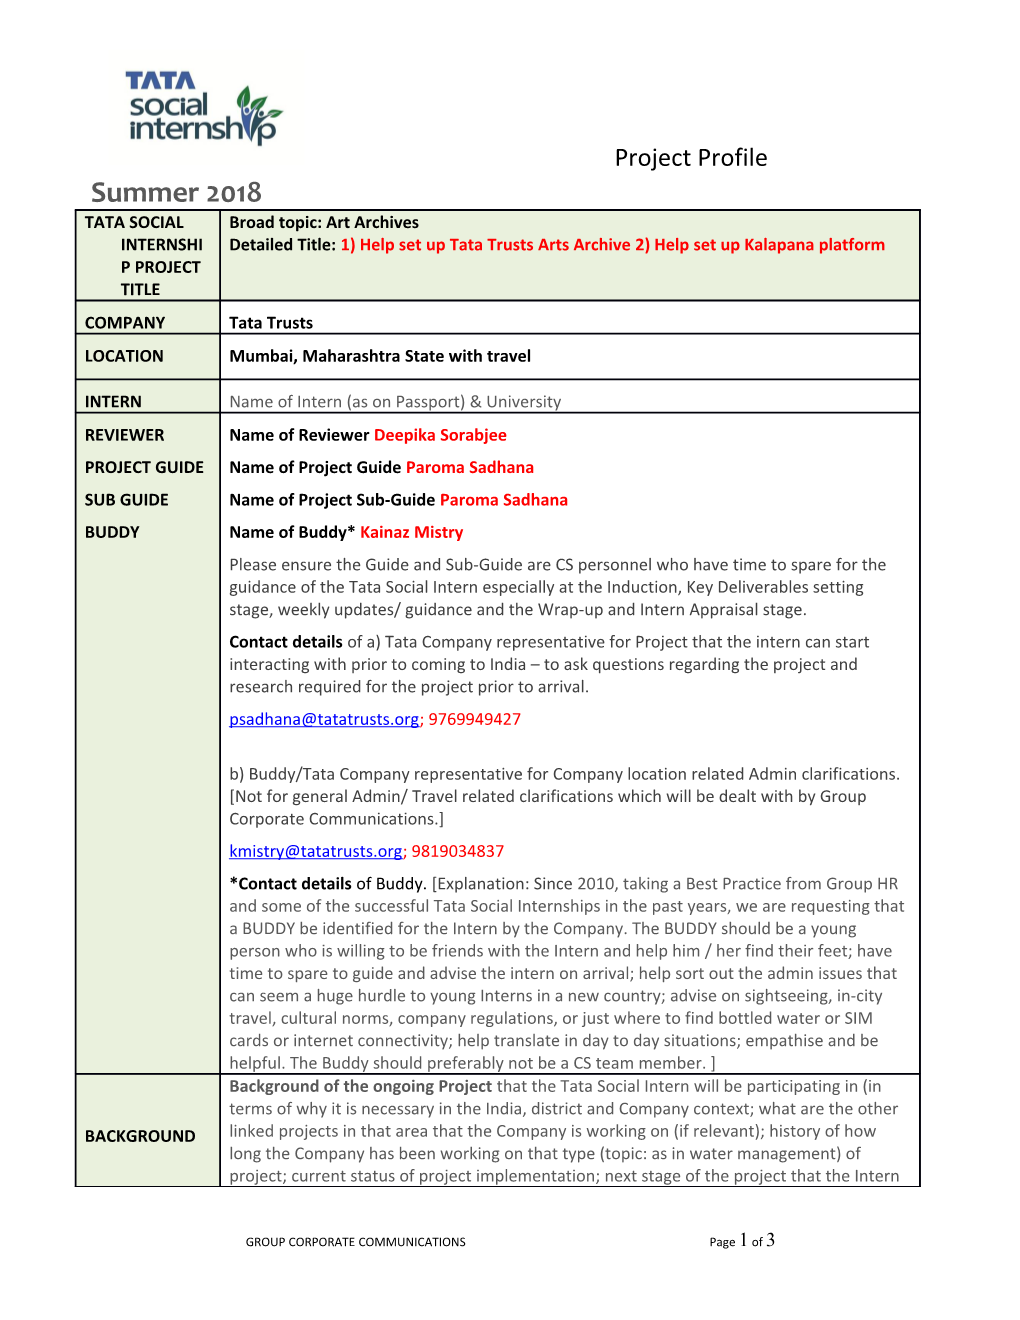 Tata ISES Project Profile